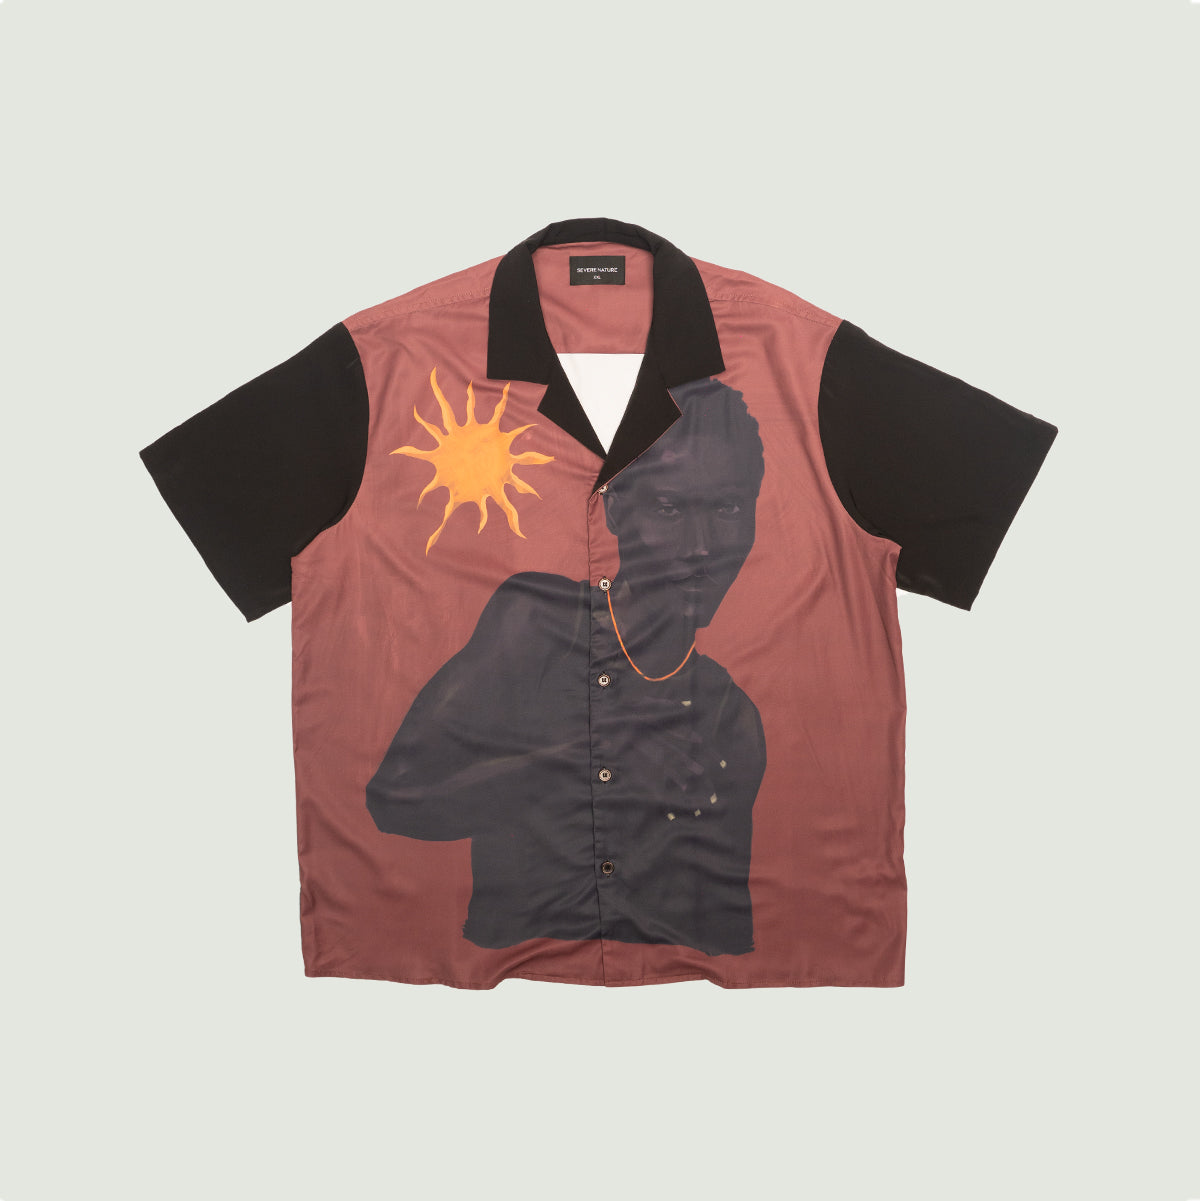 Bushman ‘Man’ Overlay Button Up shirt